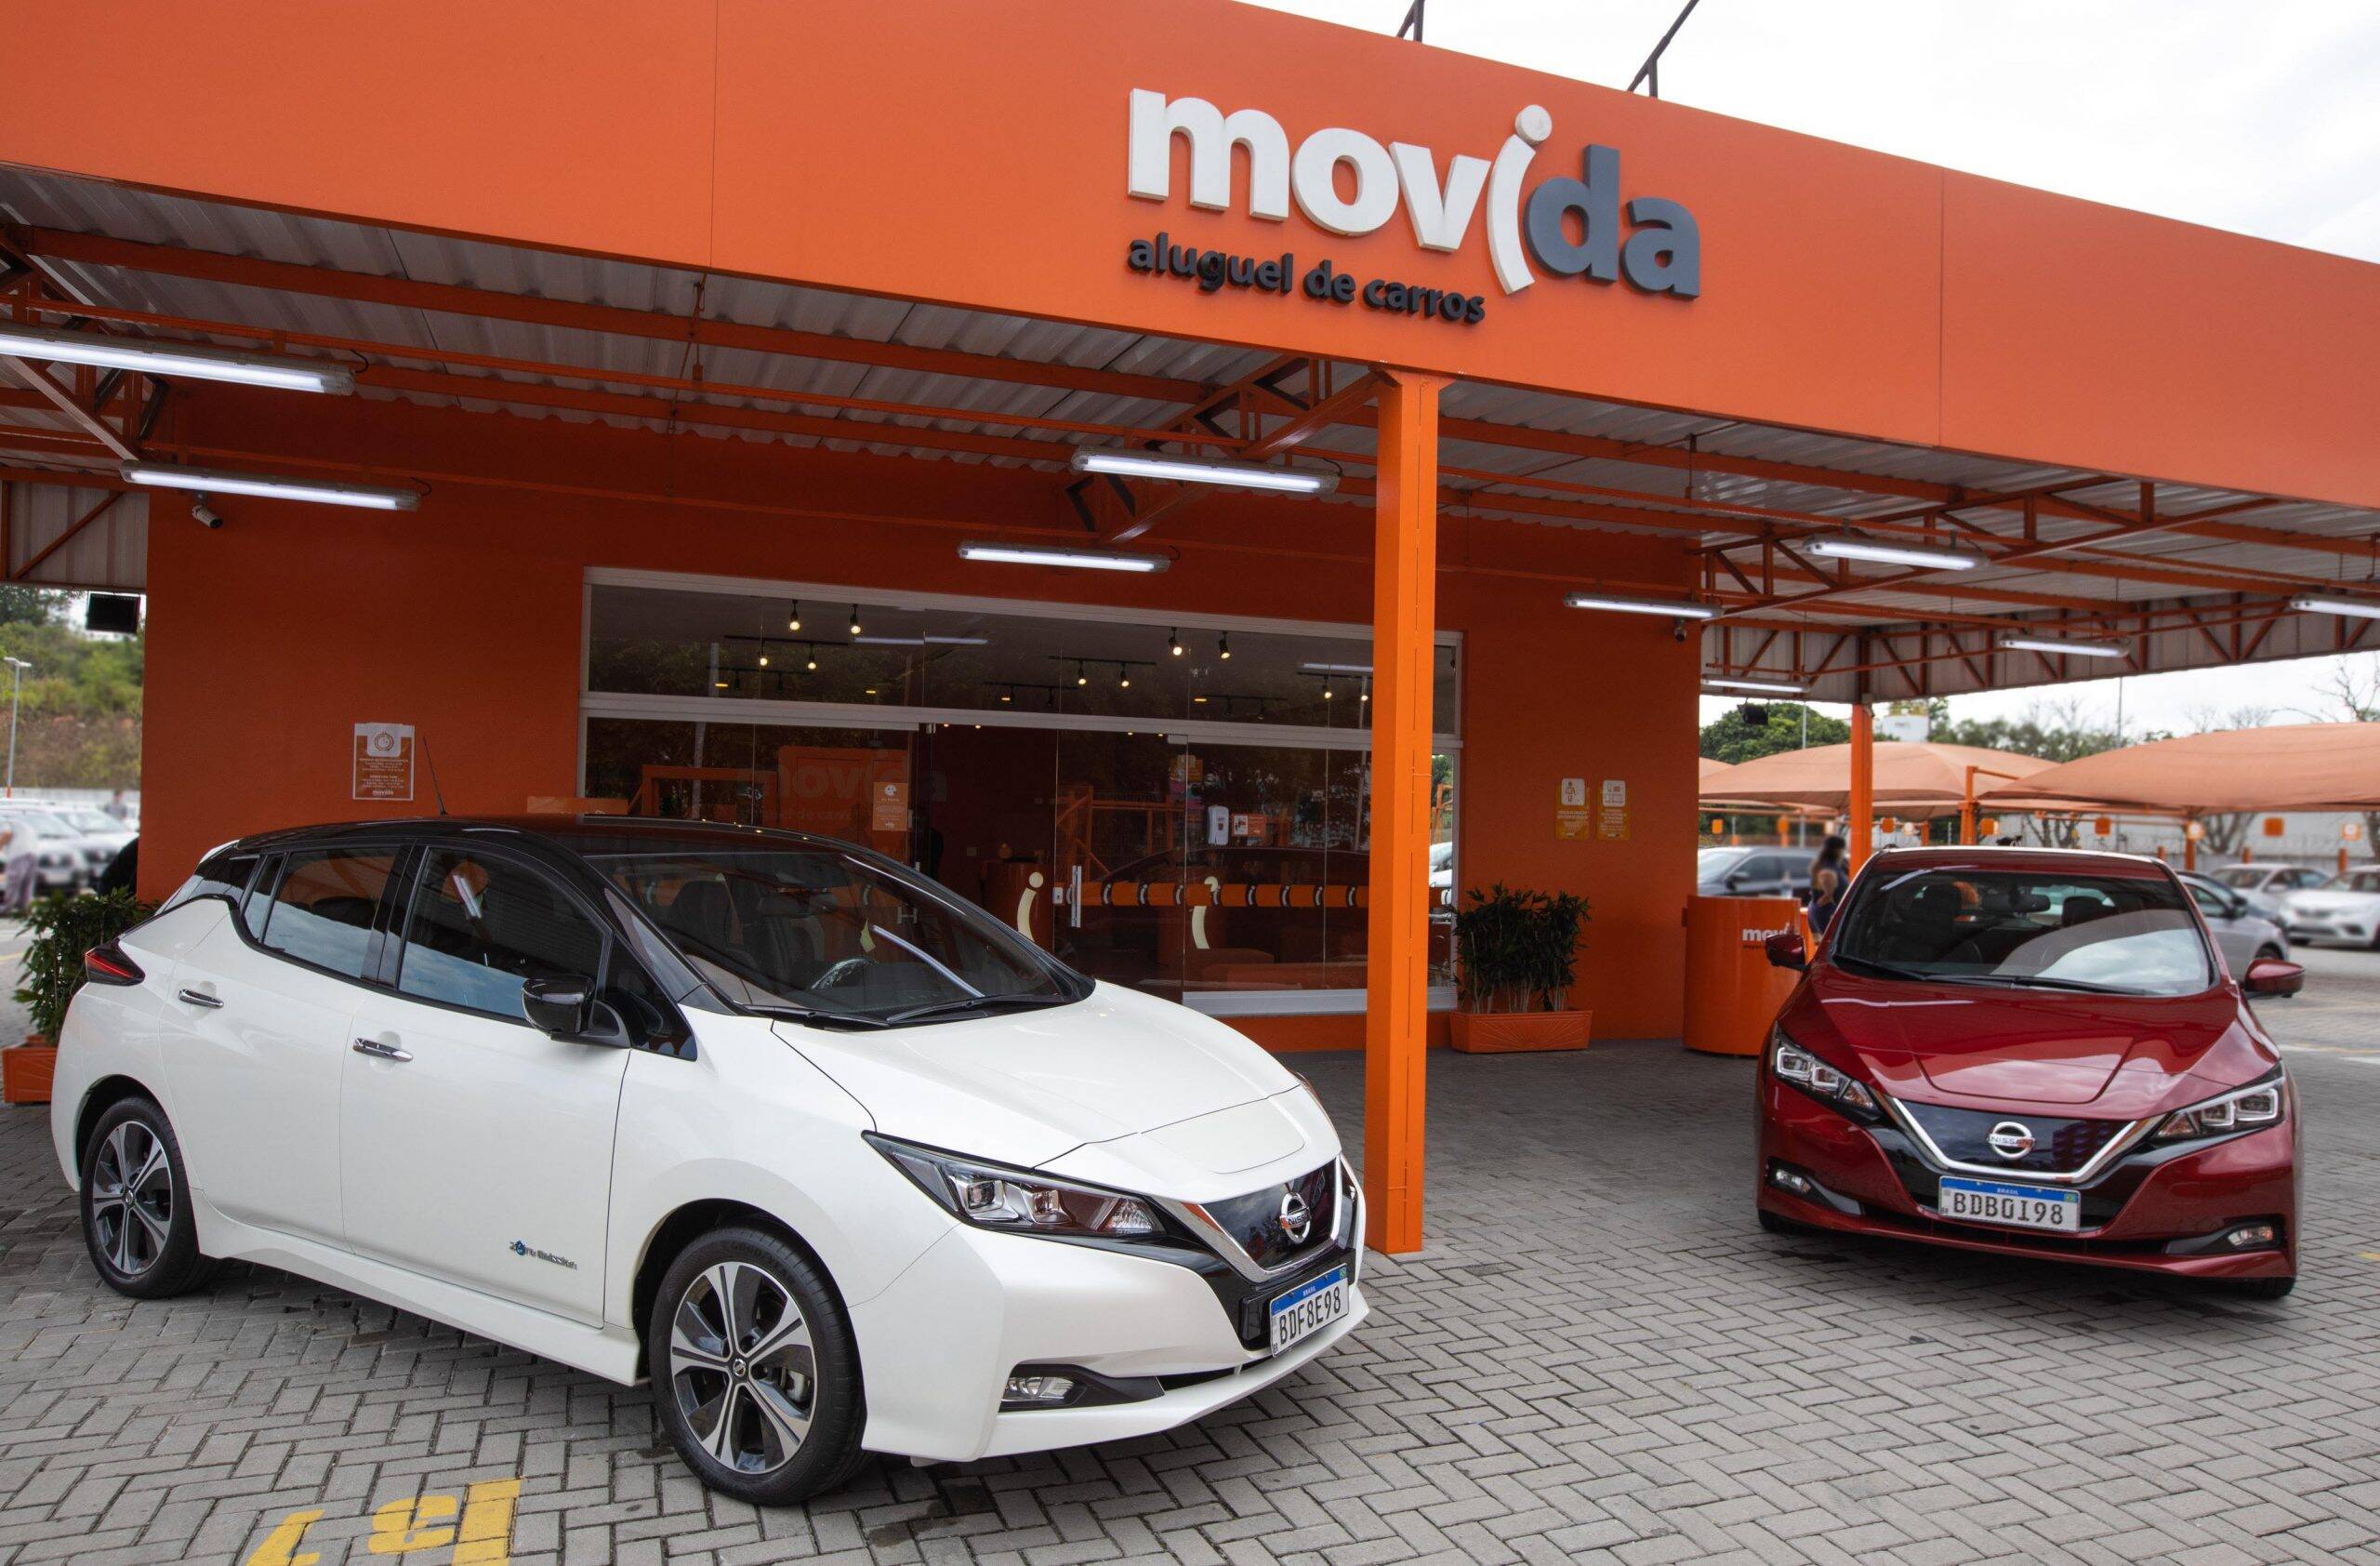 Nissan fornece elétrico Leaf para a frota da Movida